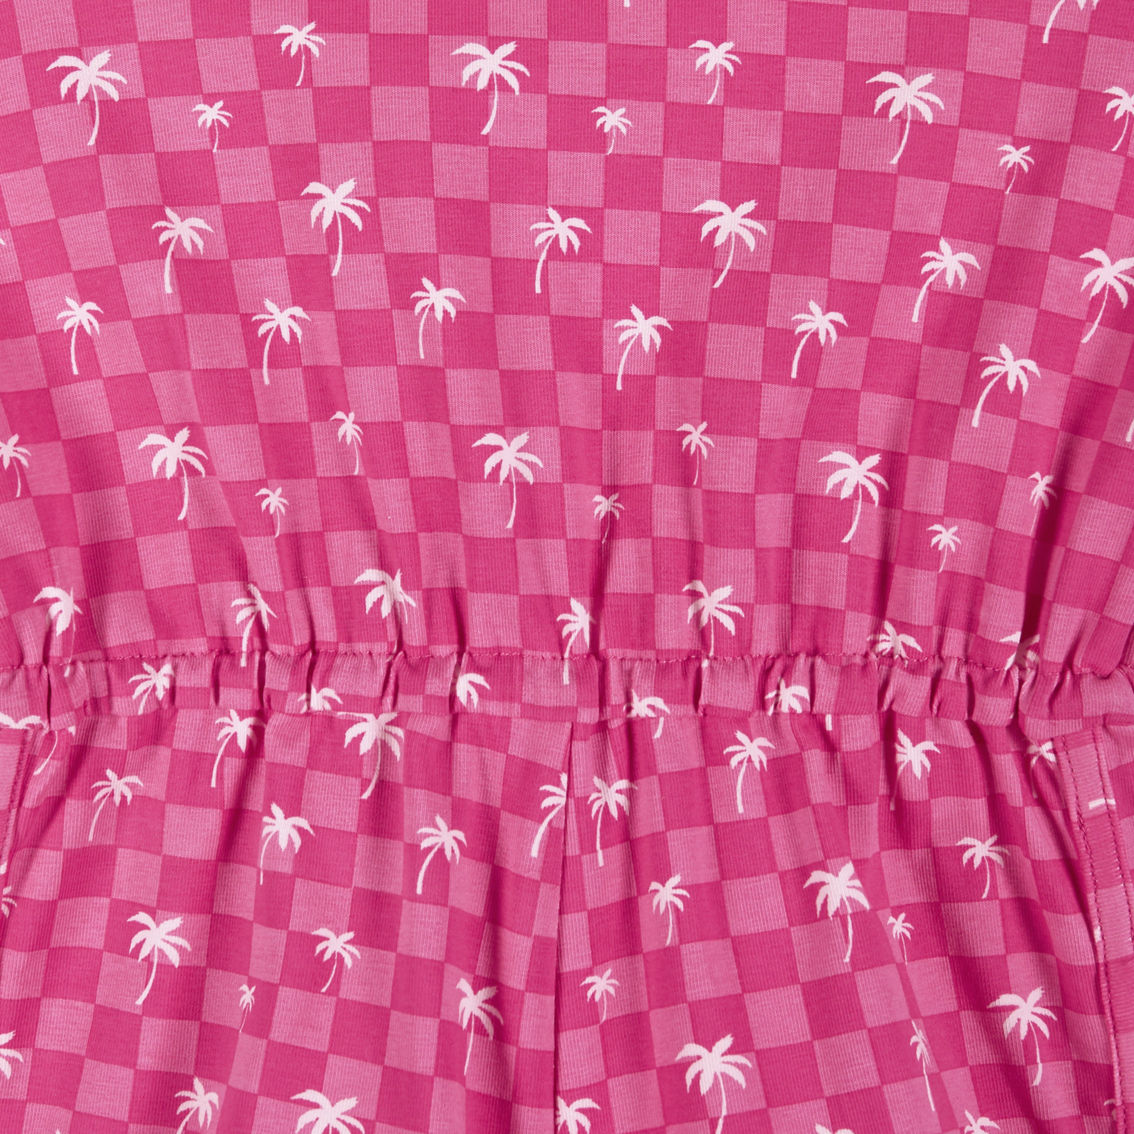 Pink Palm Tree Print Romper w/Shoulder Ties - Image 3 of 3